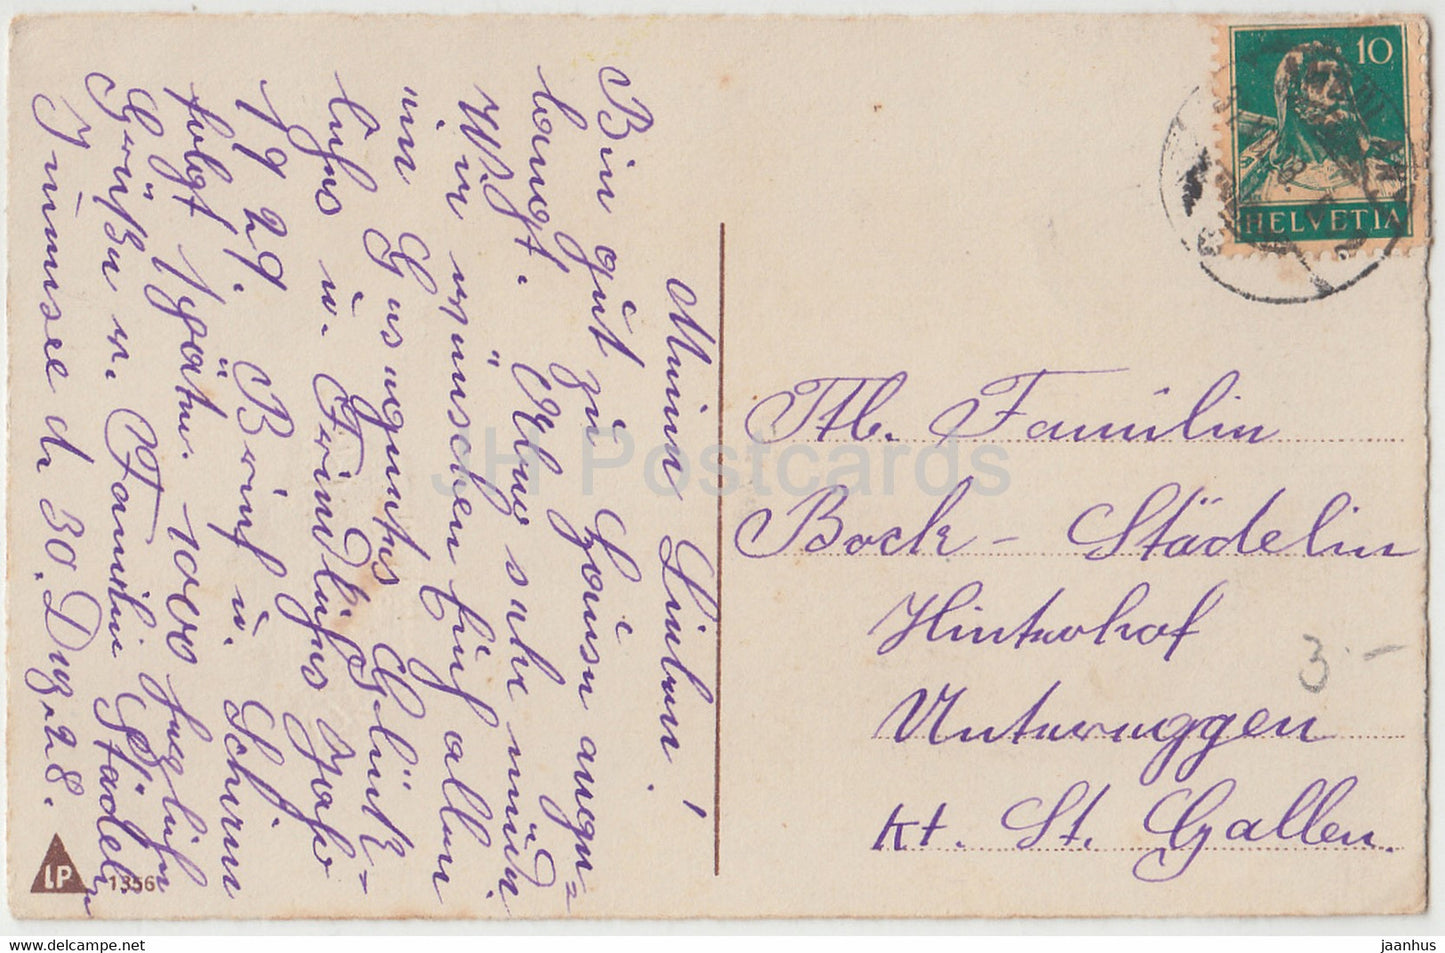 New Year Greeting Card - Herzlichen Gluckwunsch zum Neuen Jahre - LP 1356 - old postcard - 1928 - Germany - used